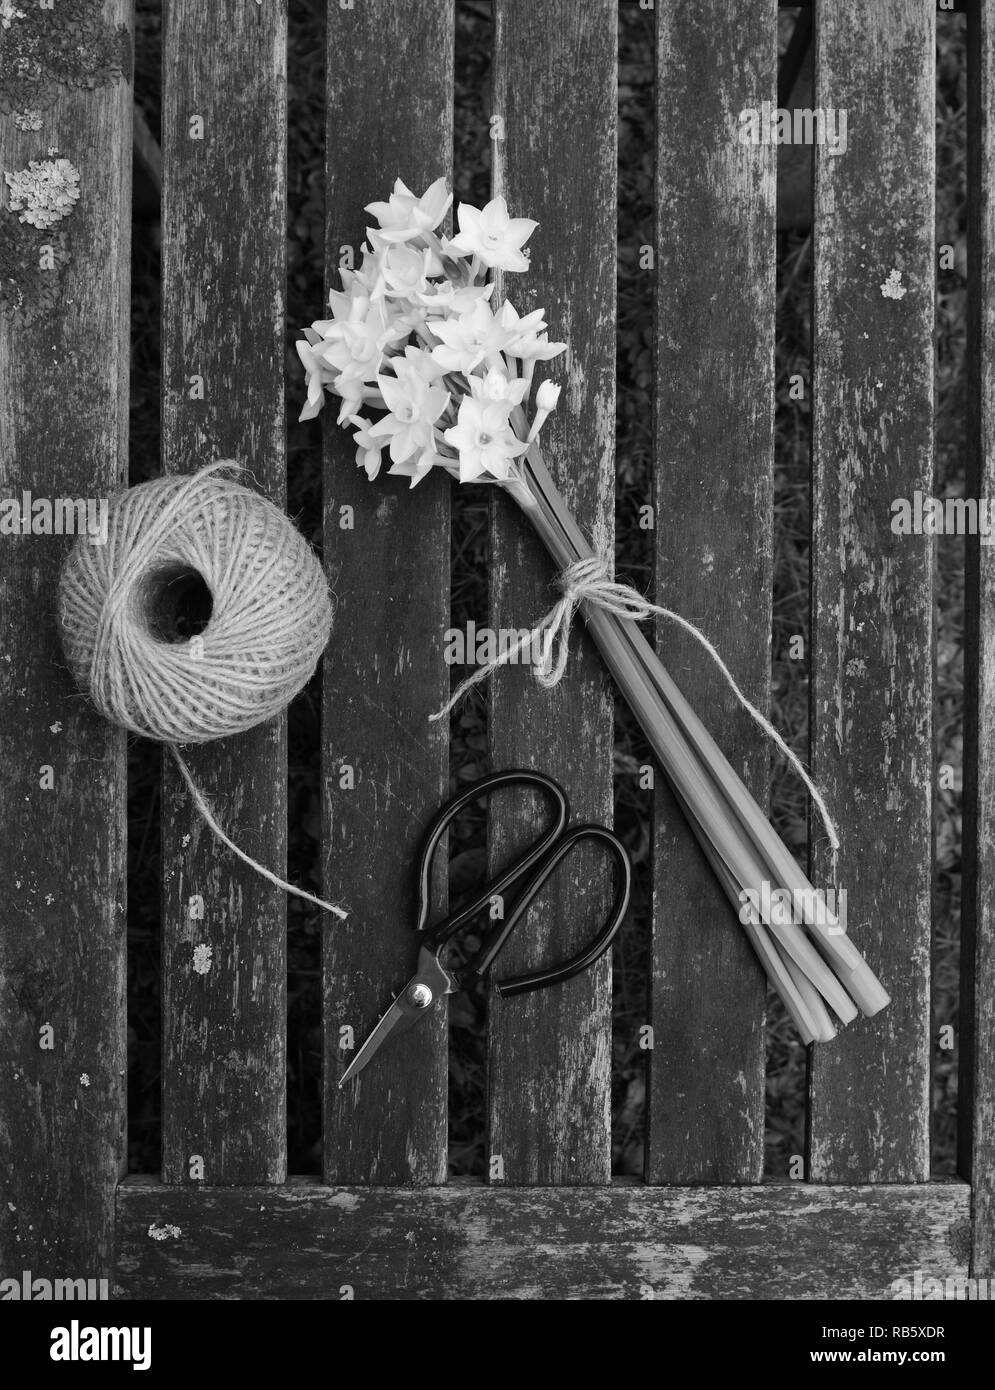 Narzissen Blumen mit Garn gebunden, mit einer Kugel aus Garten string und Schere auf einem holzstäbchen Hintergrund für Schwarzweiß-Verarbeitung Stockfoto